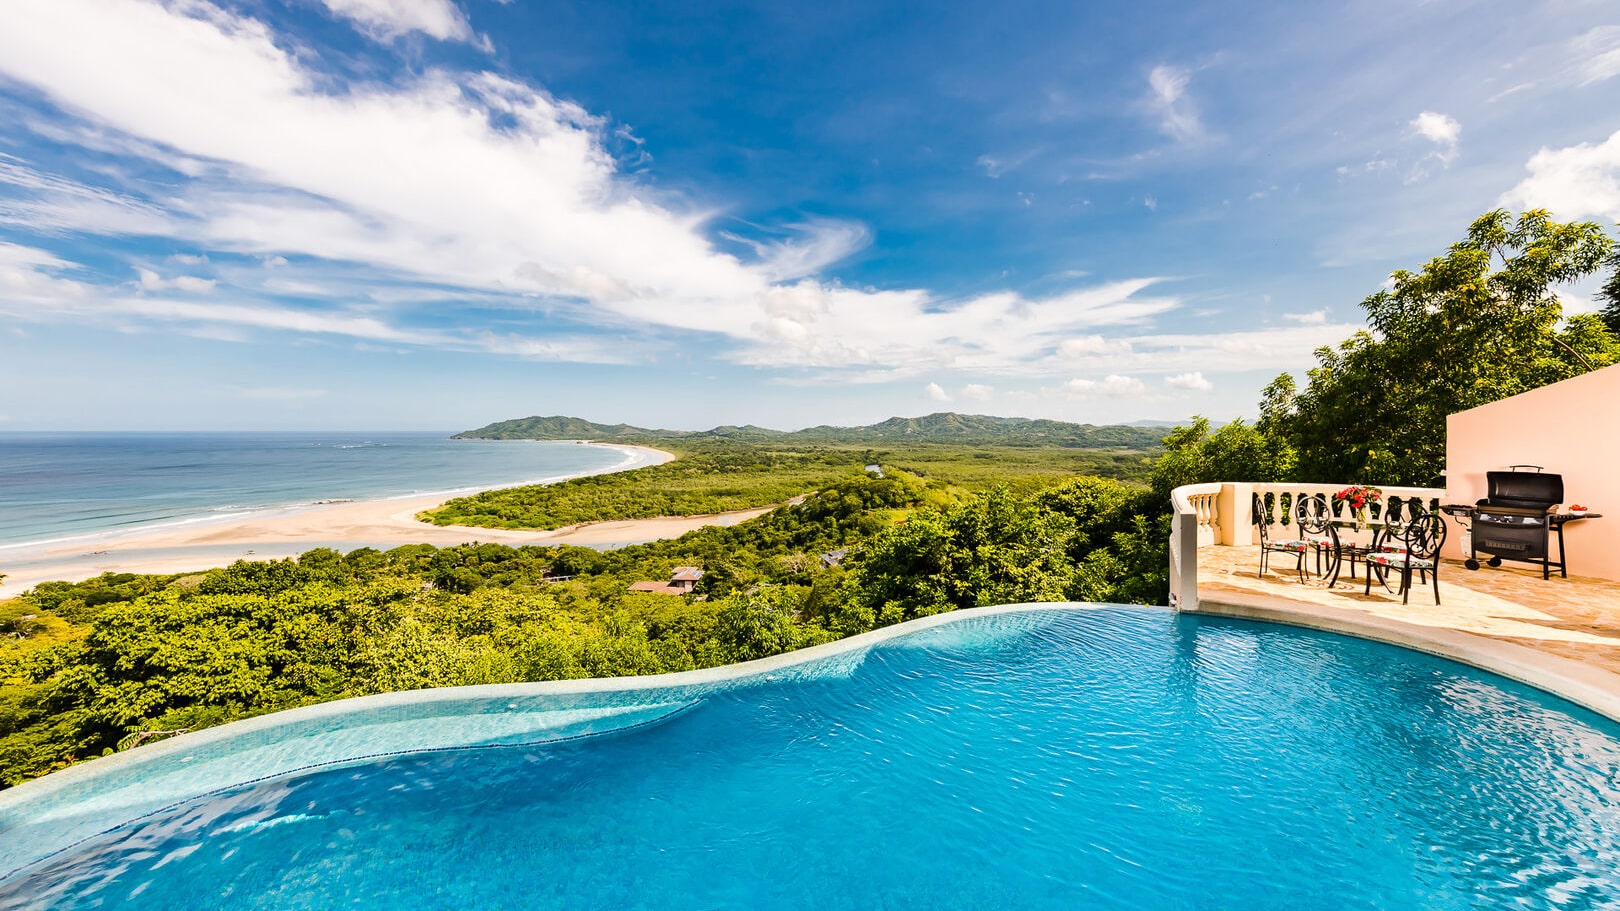 Casa Xanadu vacation rentals in Tamarindo Costa Rica 16 9